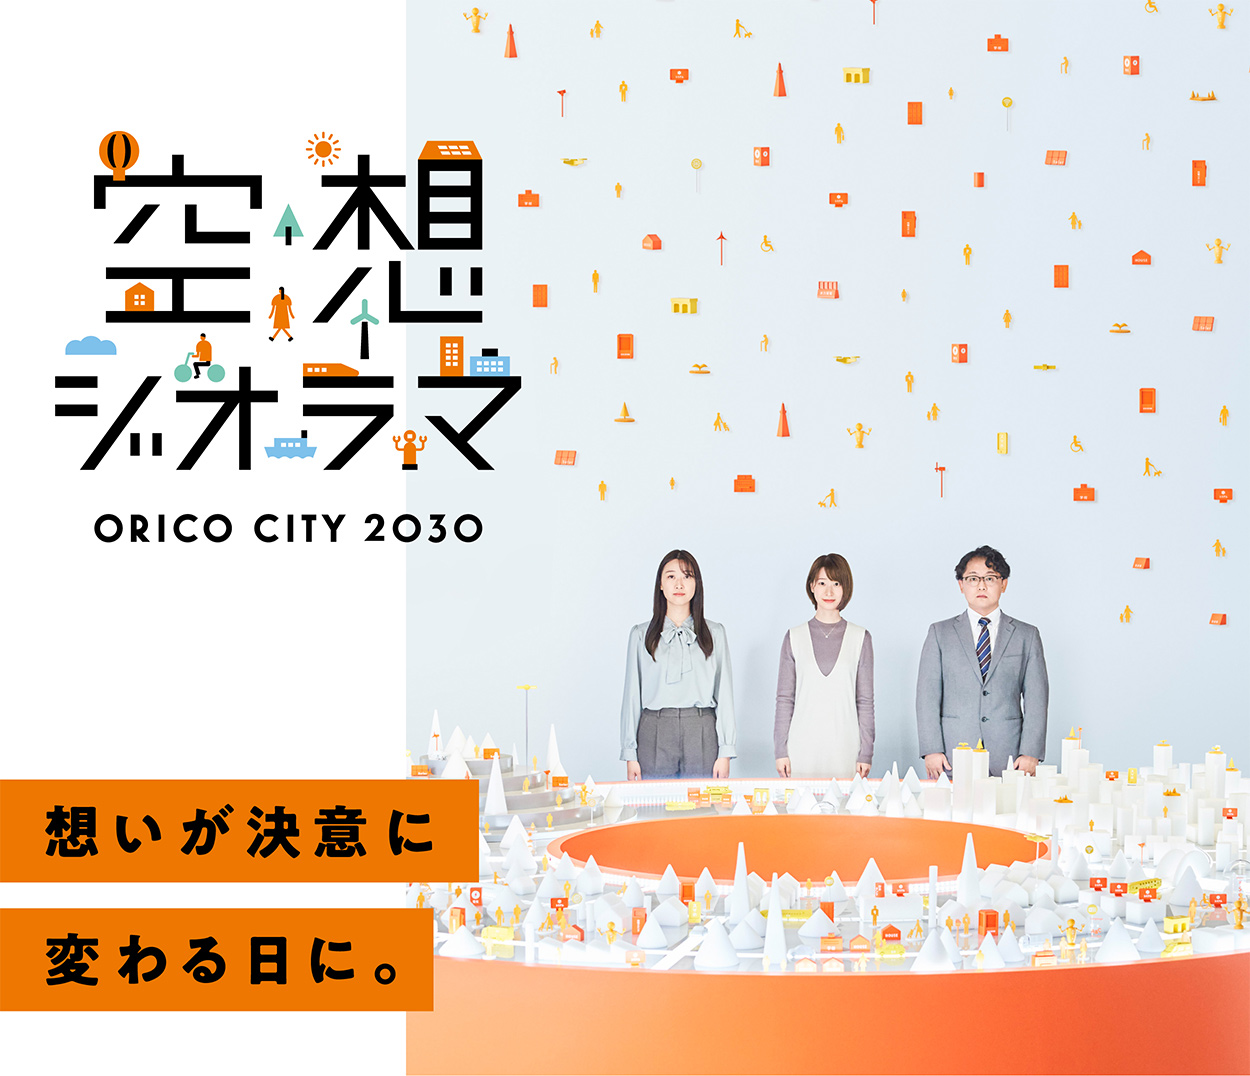 空想ジオラマ ORICO CITY 2030 想いが決意に変わる日に。